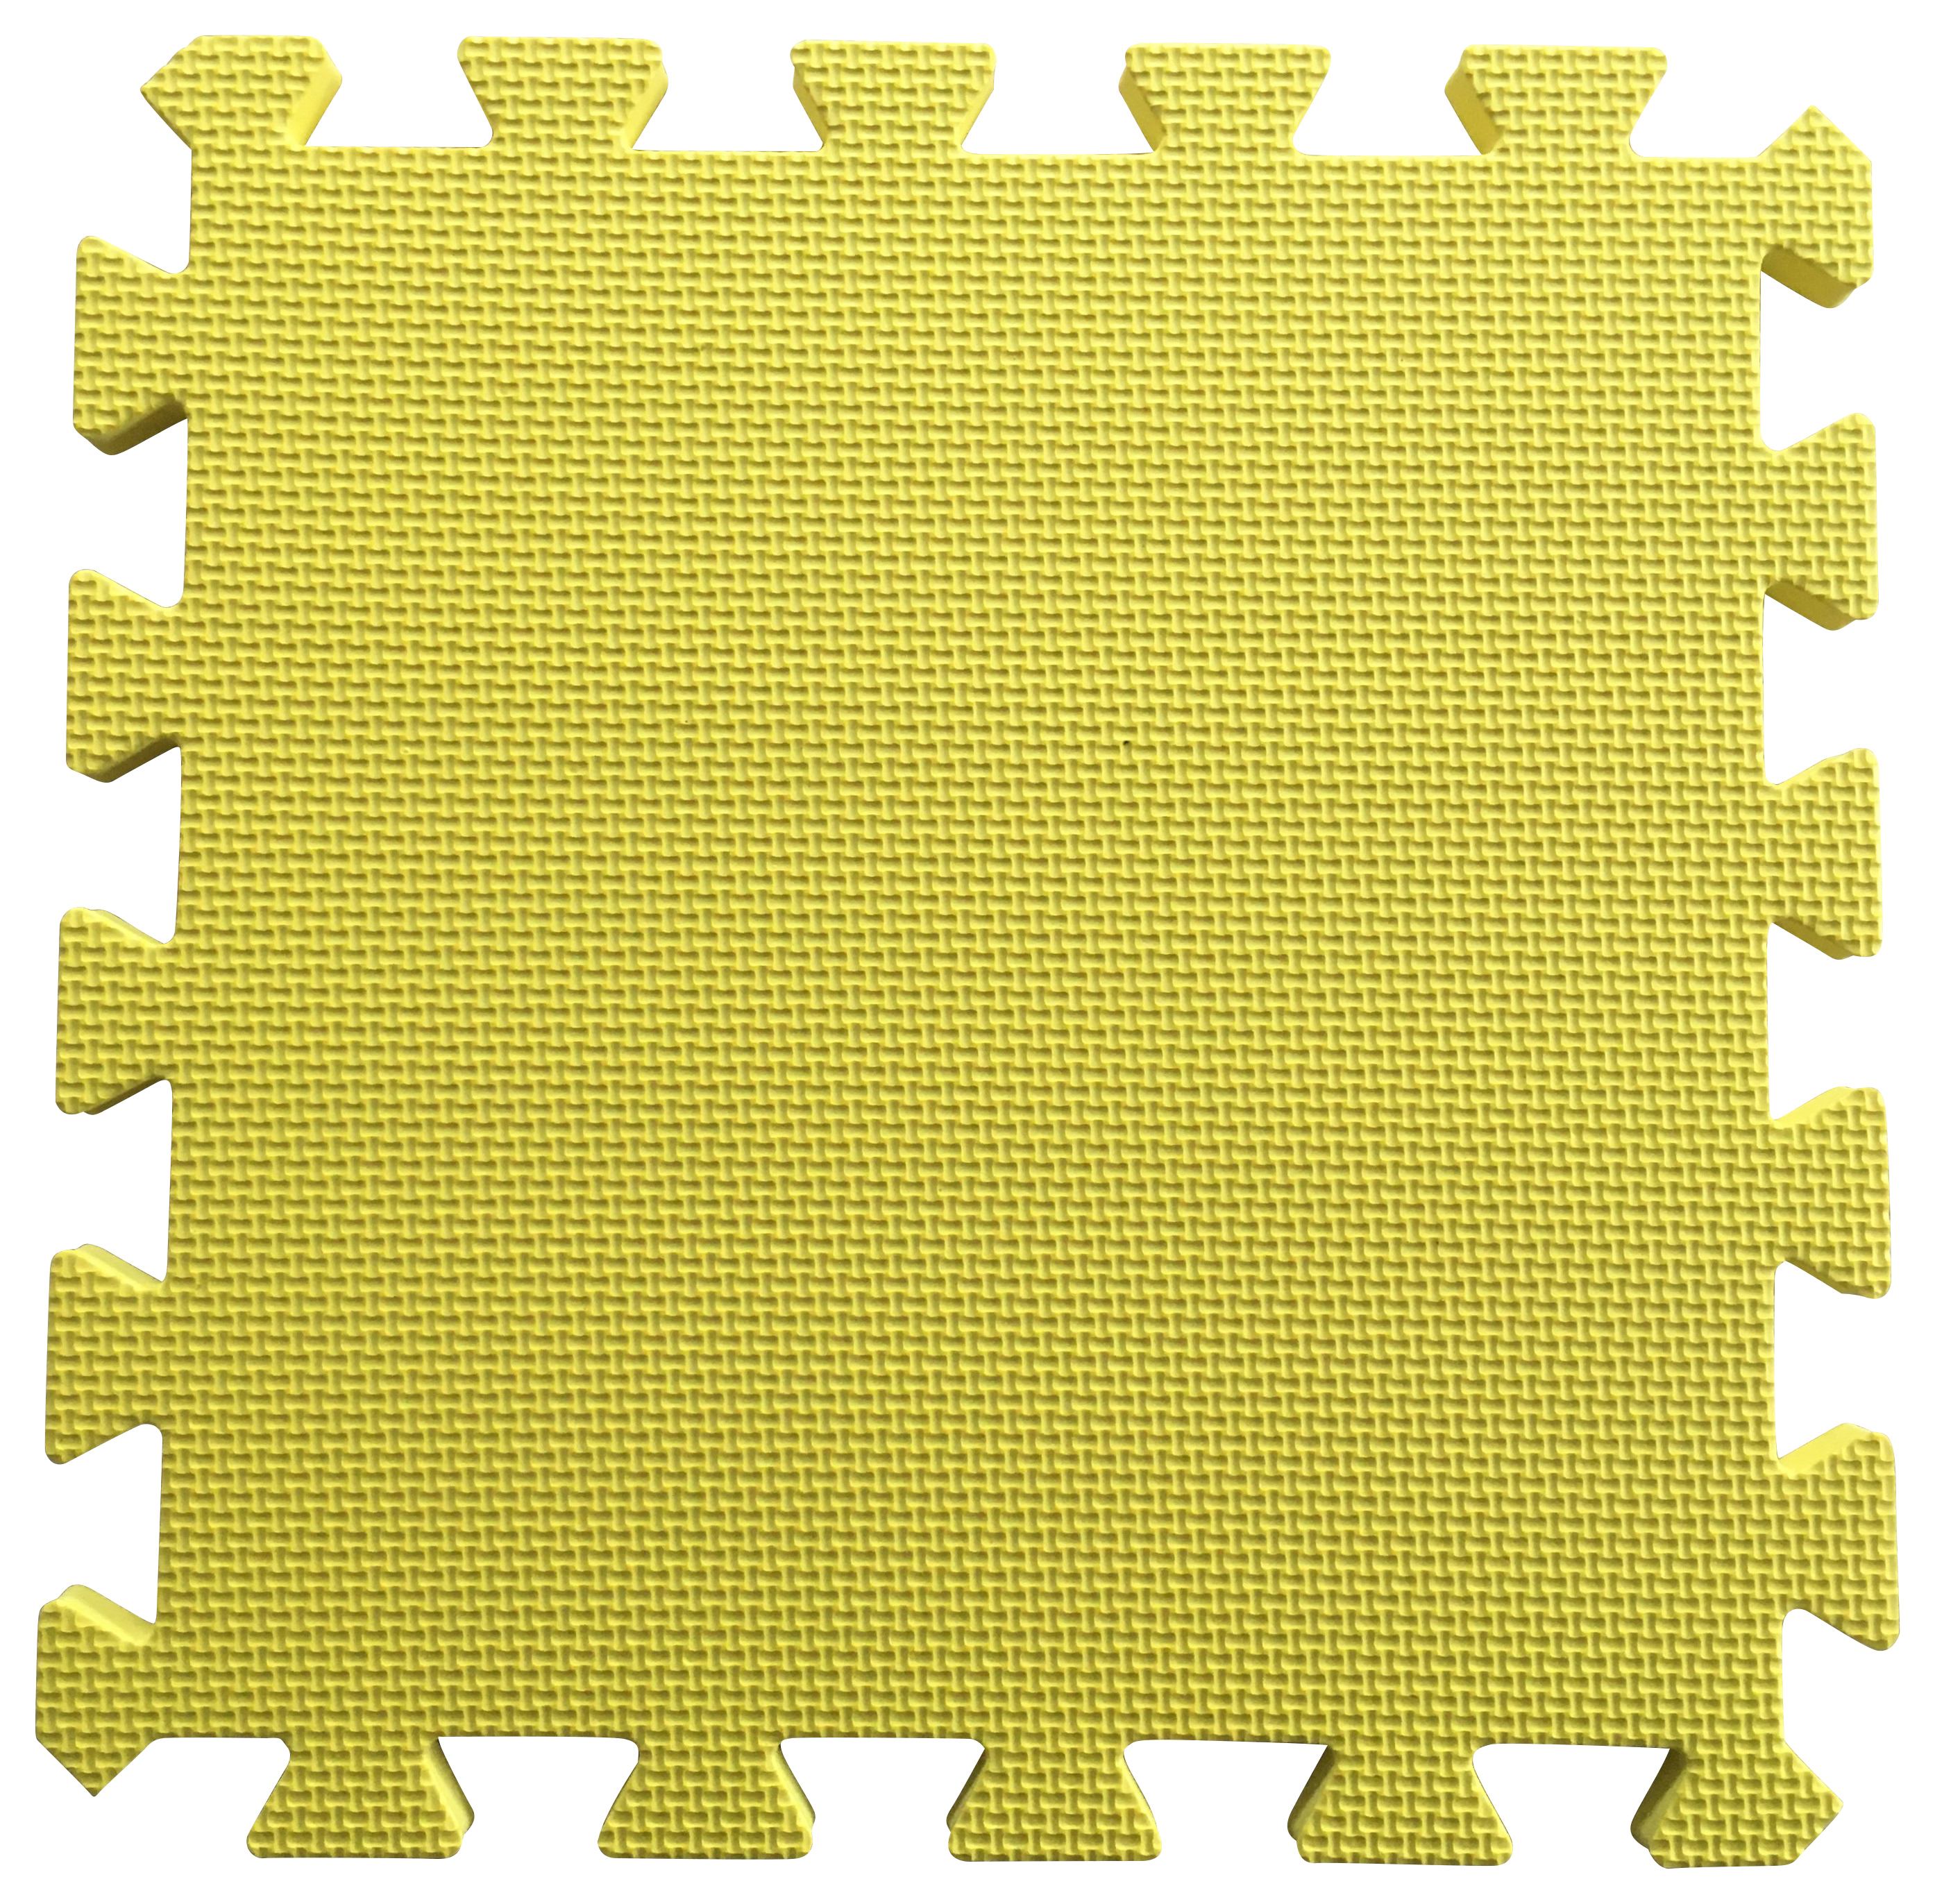 Warm Floor Yellow Interlocking Floor Tiles for Garden Buildings - 6 x 8ft